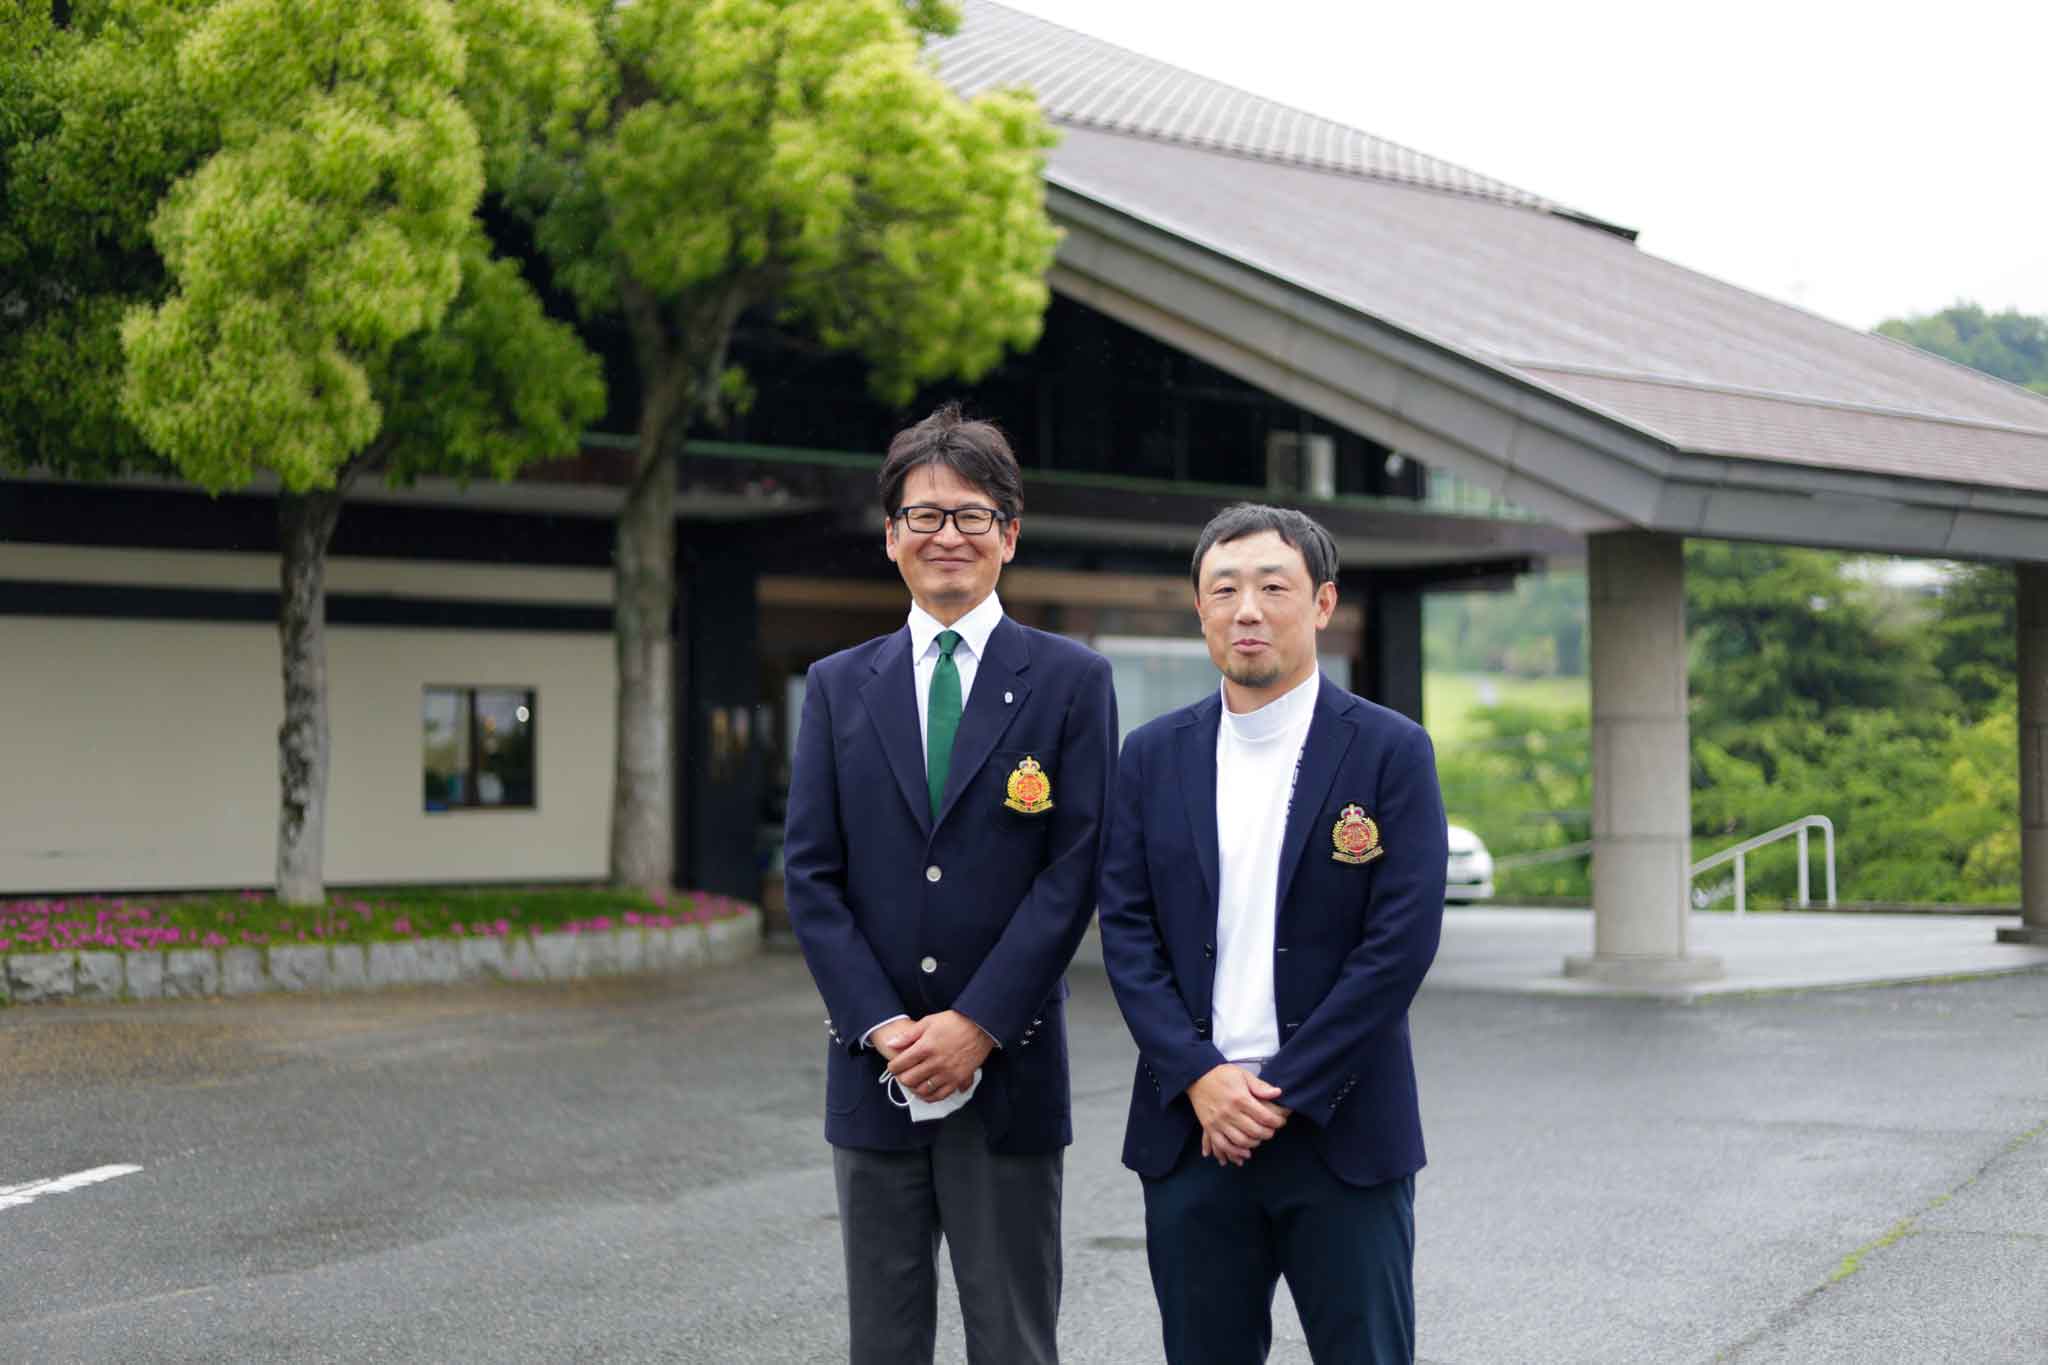 枚方国際ゴルフ倶楽部の玄関前で支配人と記念写真する平田雅也さん